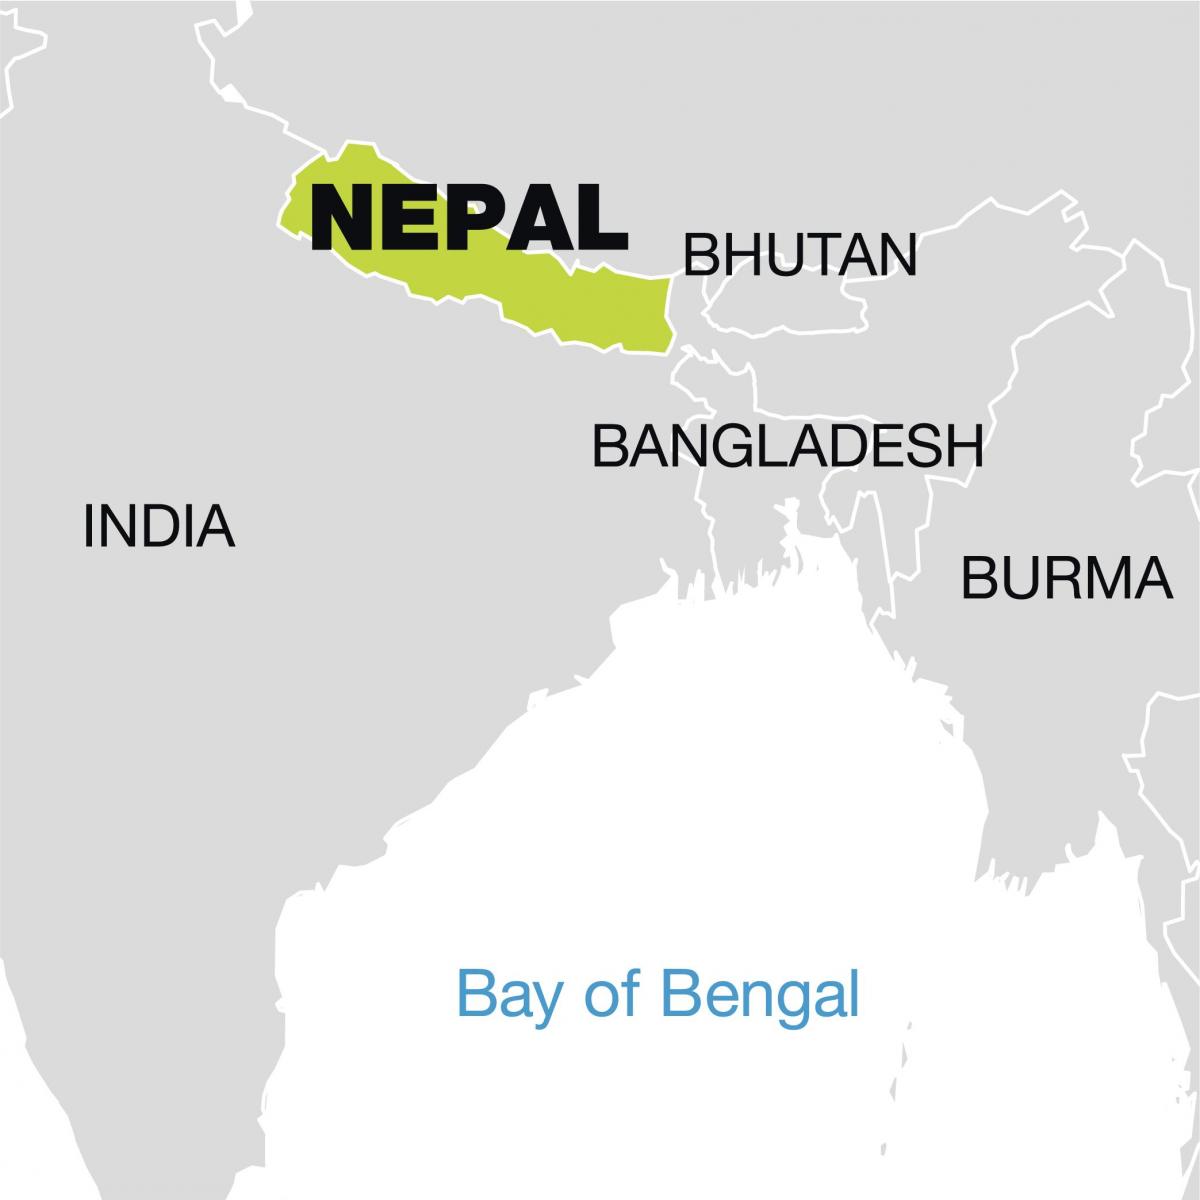 carte du monde montrant népal